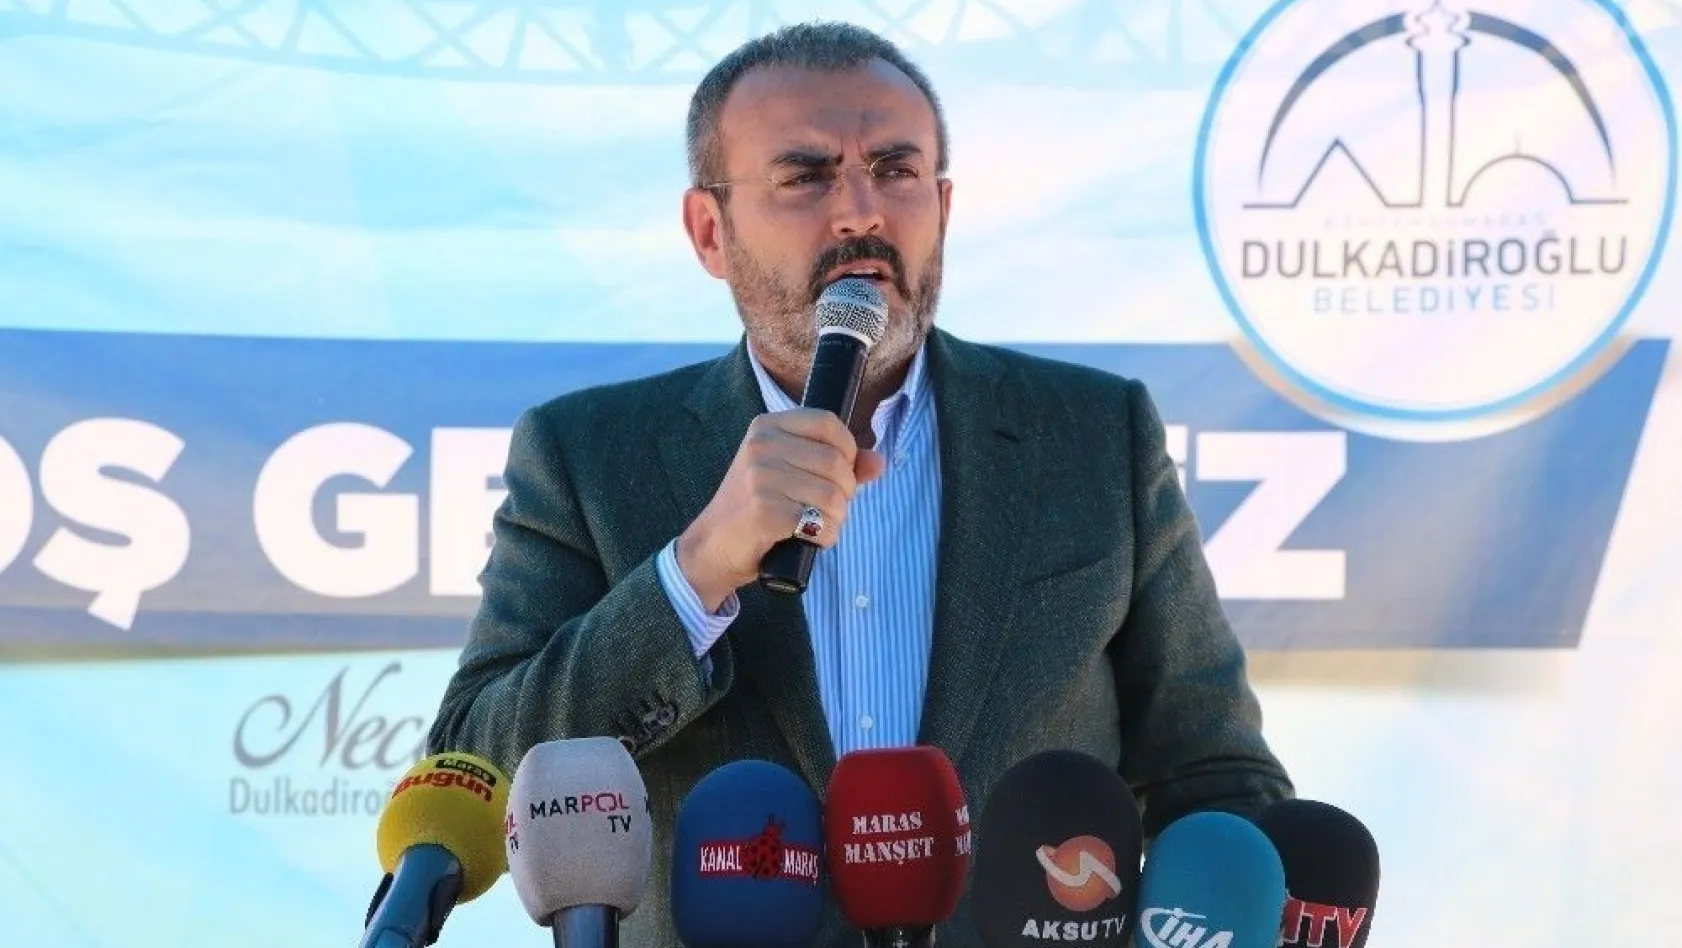 AK Parti Genel Başkan Yardımcısı Ünal: 'Allah'ın izniyle istikbal bu milletin olacaktır'
